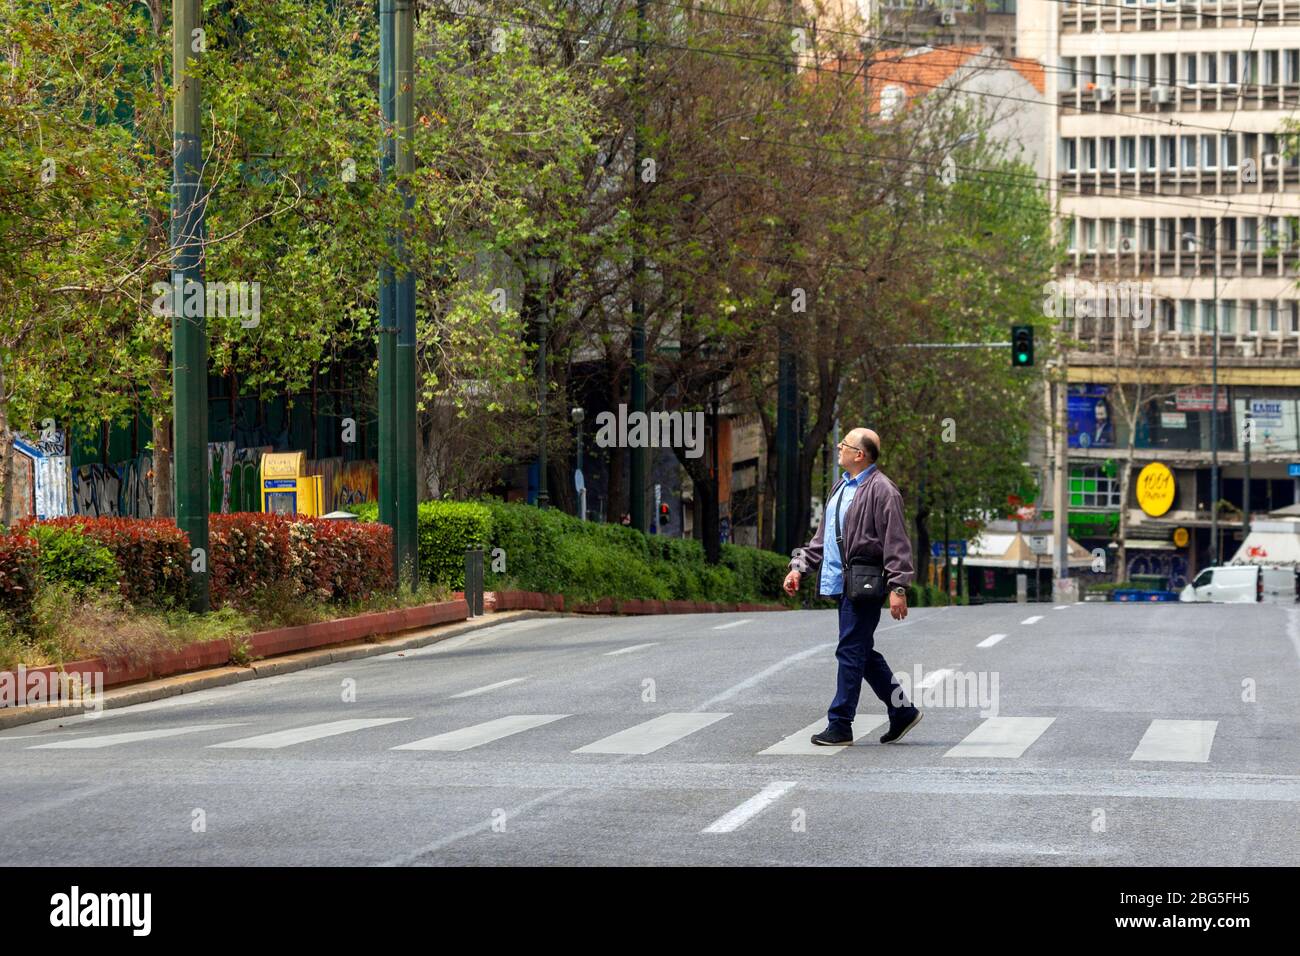 Un ateniense camina durante el encierro en la calle Panepistimiou, una de las avenidas más concurridas de Atenas, Grecia, casi vacía ahora durante el brote de coronavirus. Foto de stock